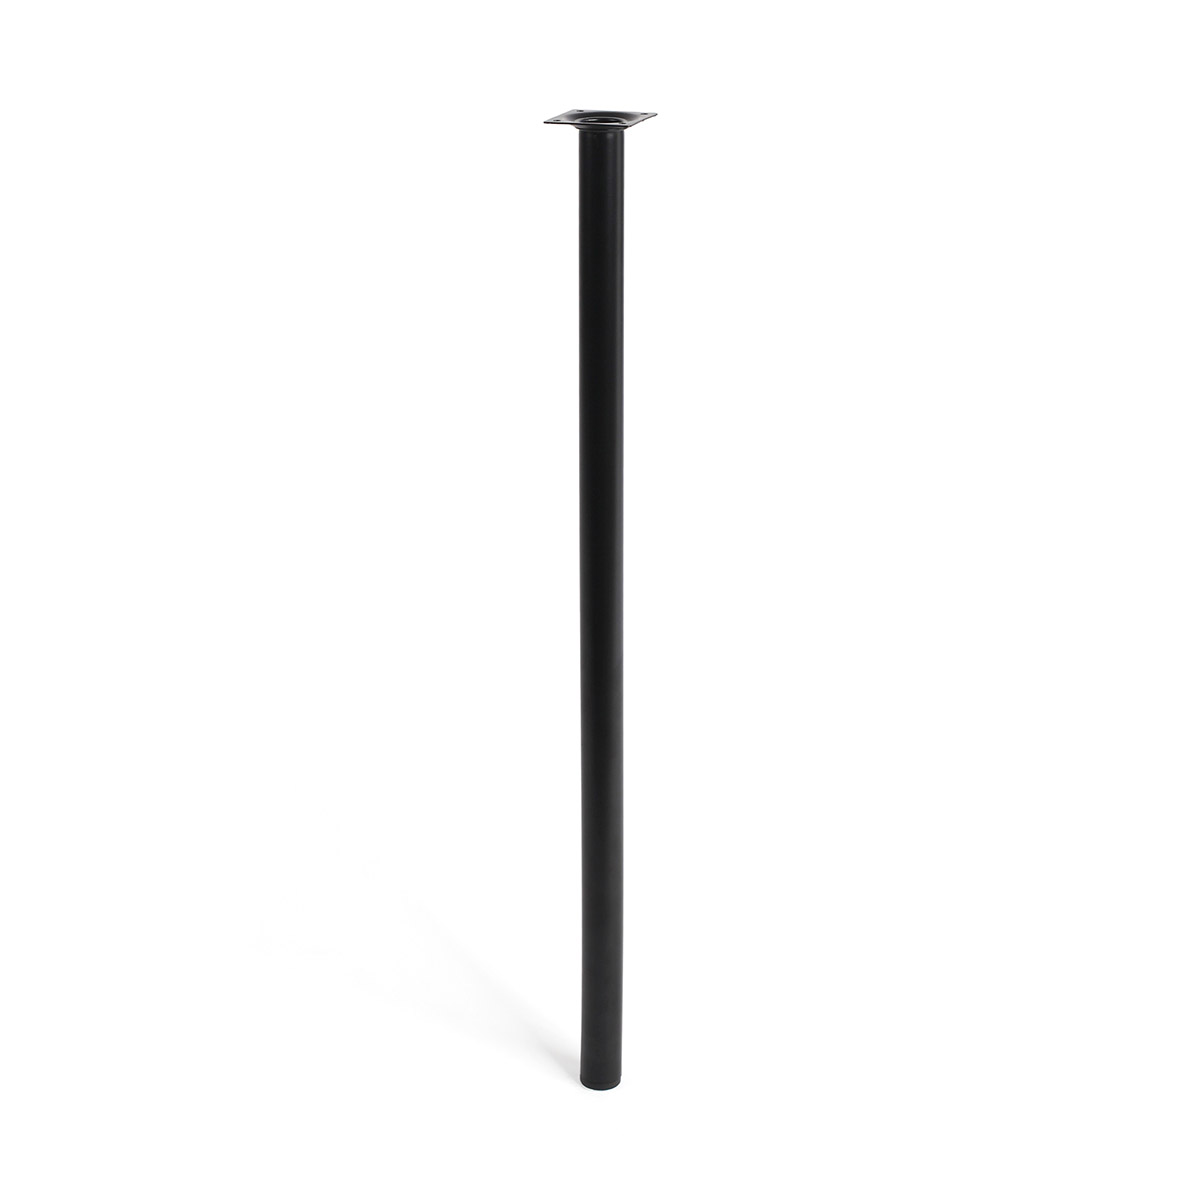 Pata de acero cilíndrica con una altura de 700 mm y acabada en negro. Dimensiones: 30x30x700 mm